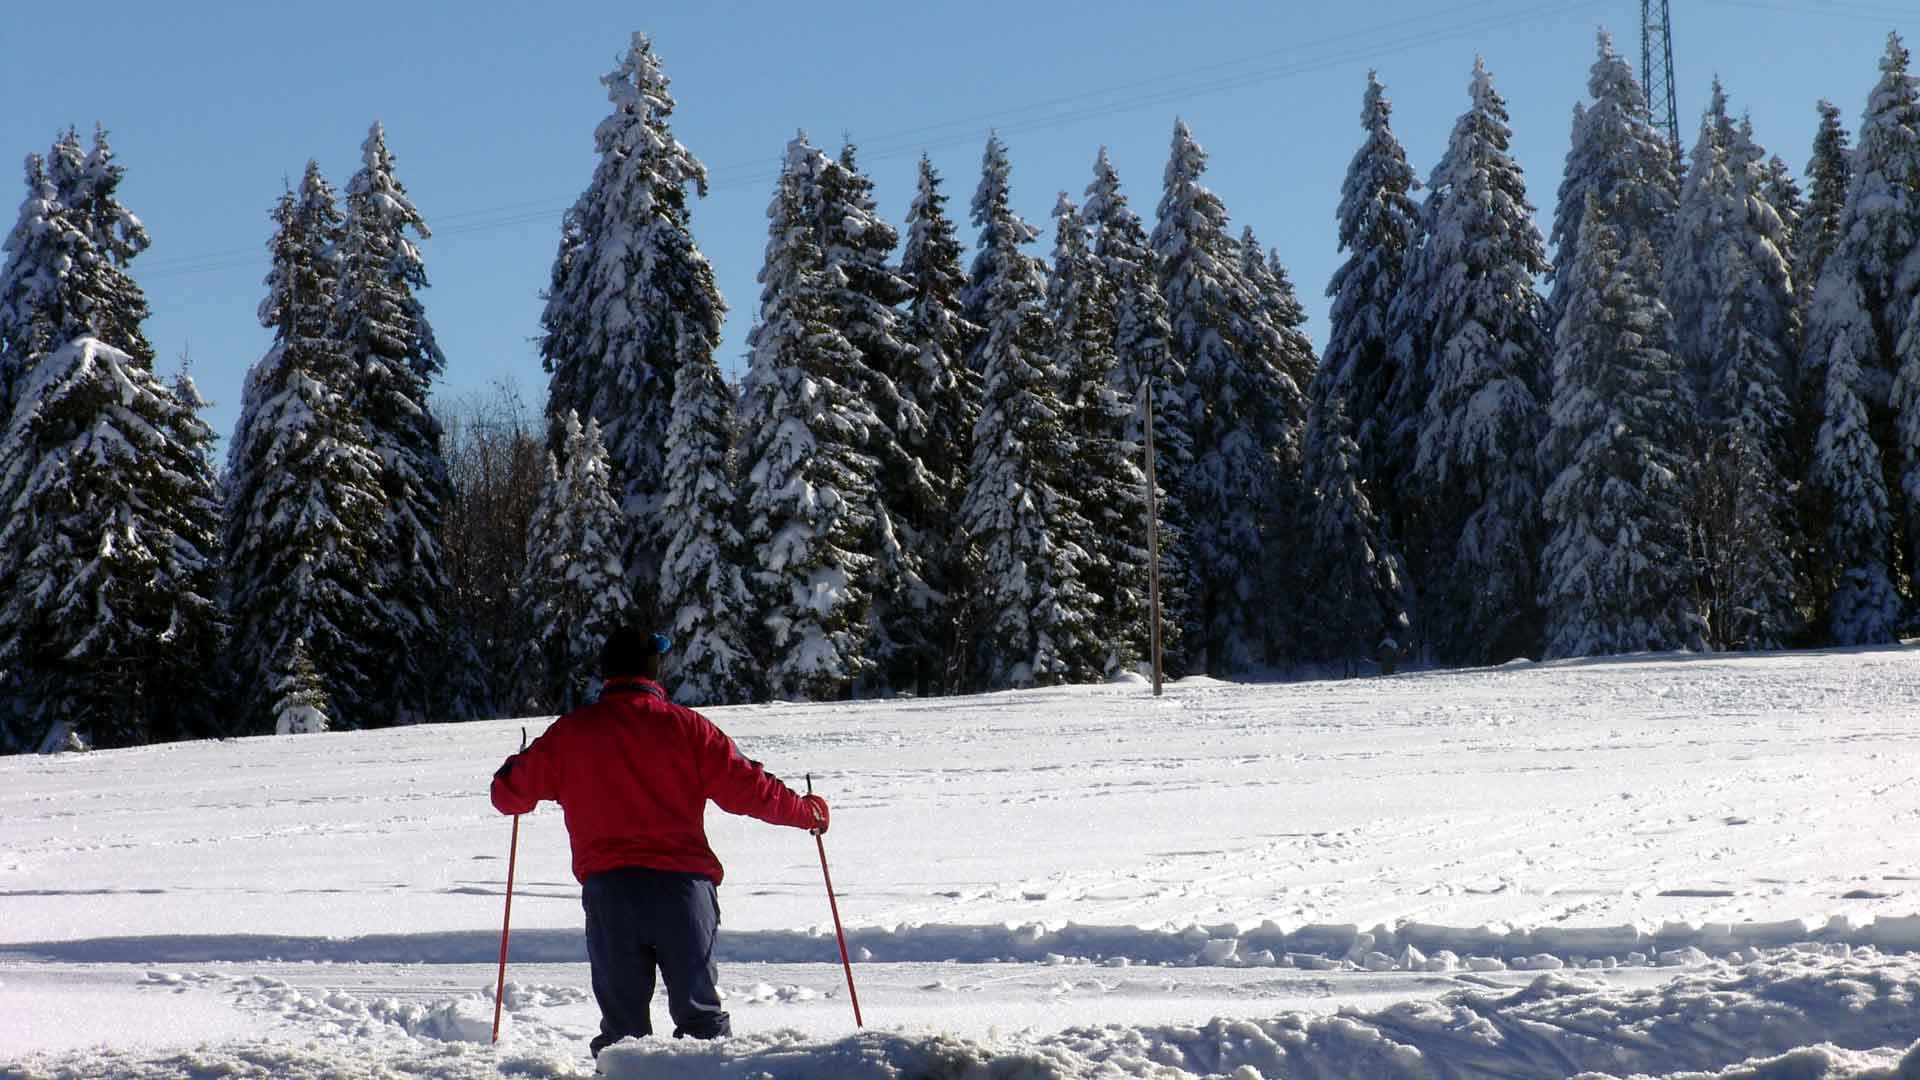 Wintersport im Harz